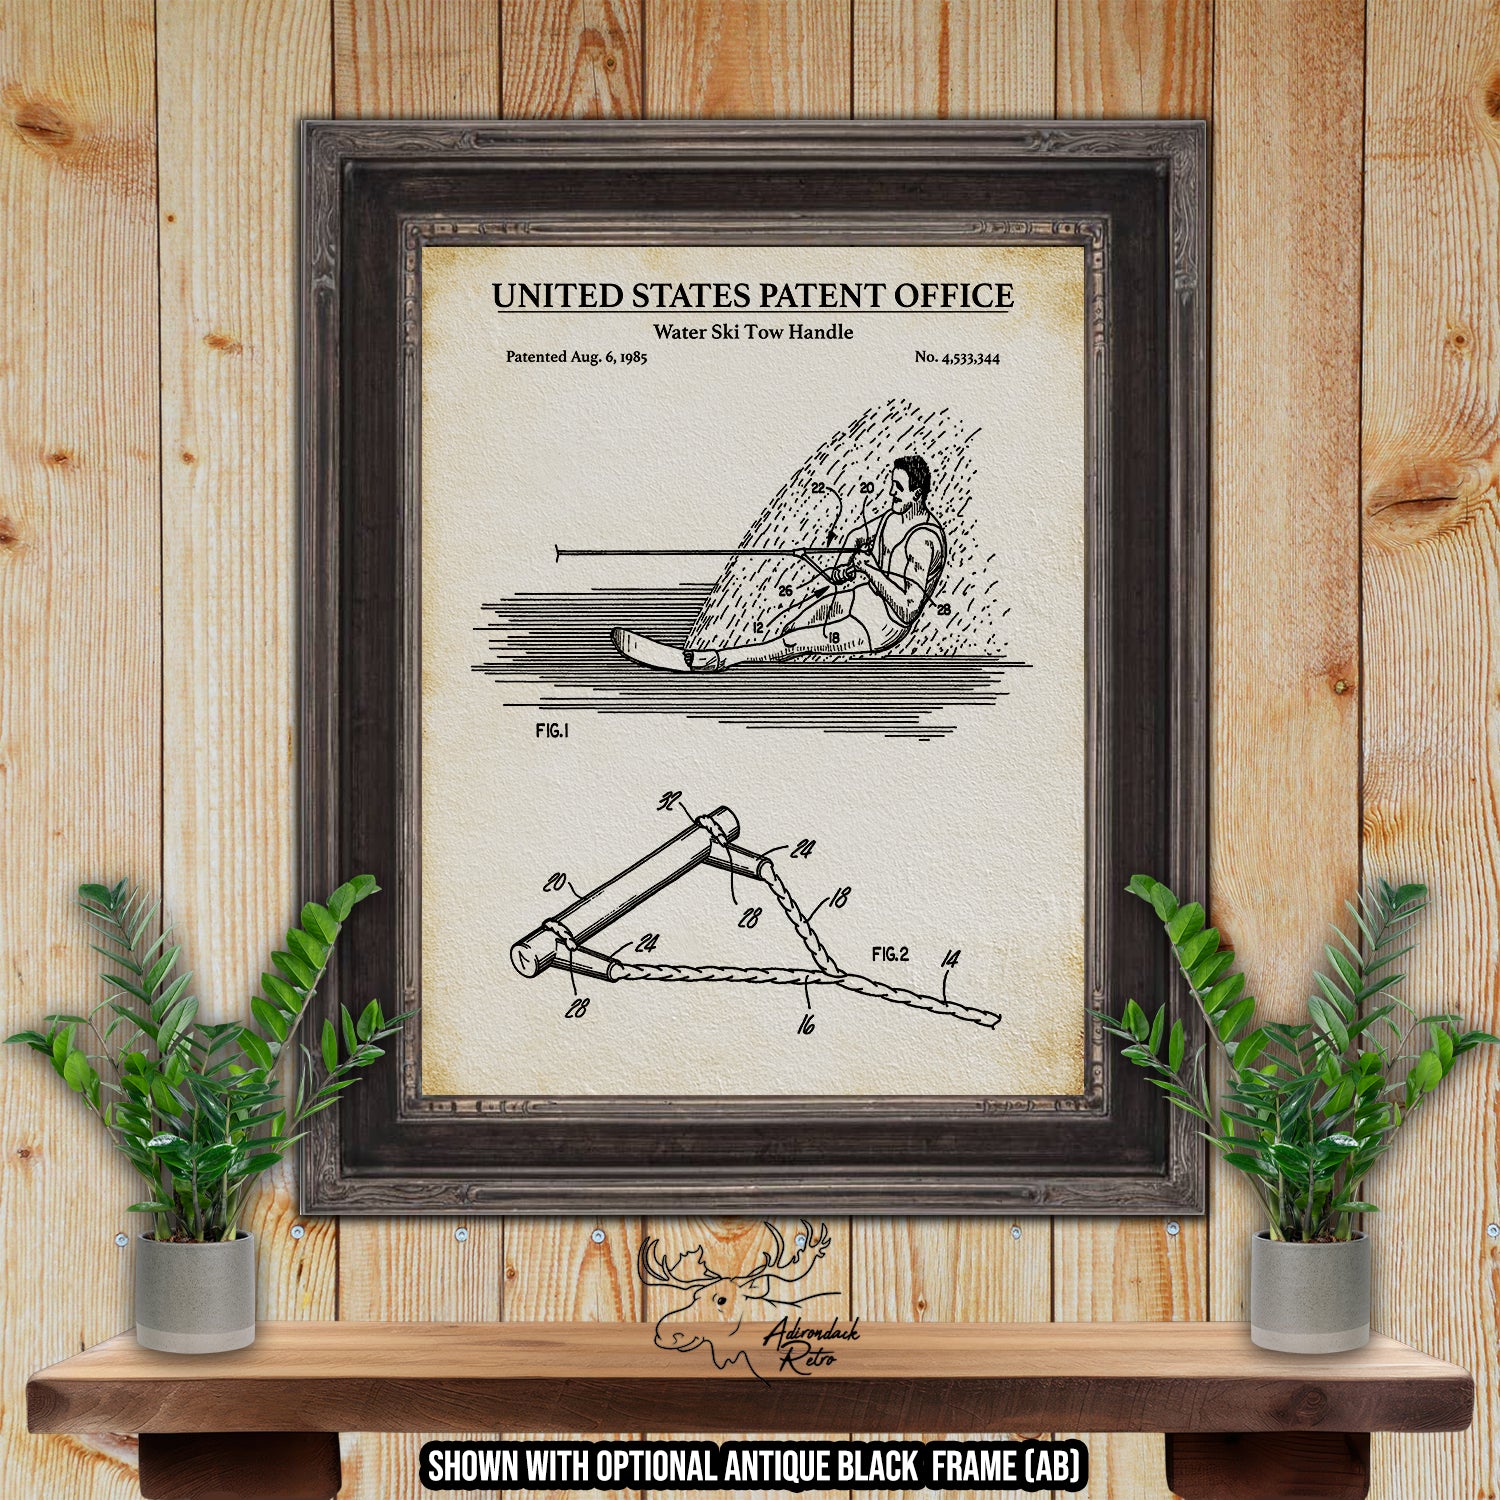 Water Ski Tow Handle 1985 Patent Print at Adirondack Retro